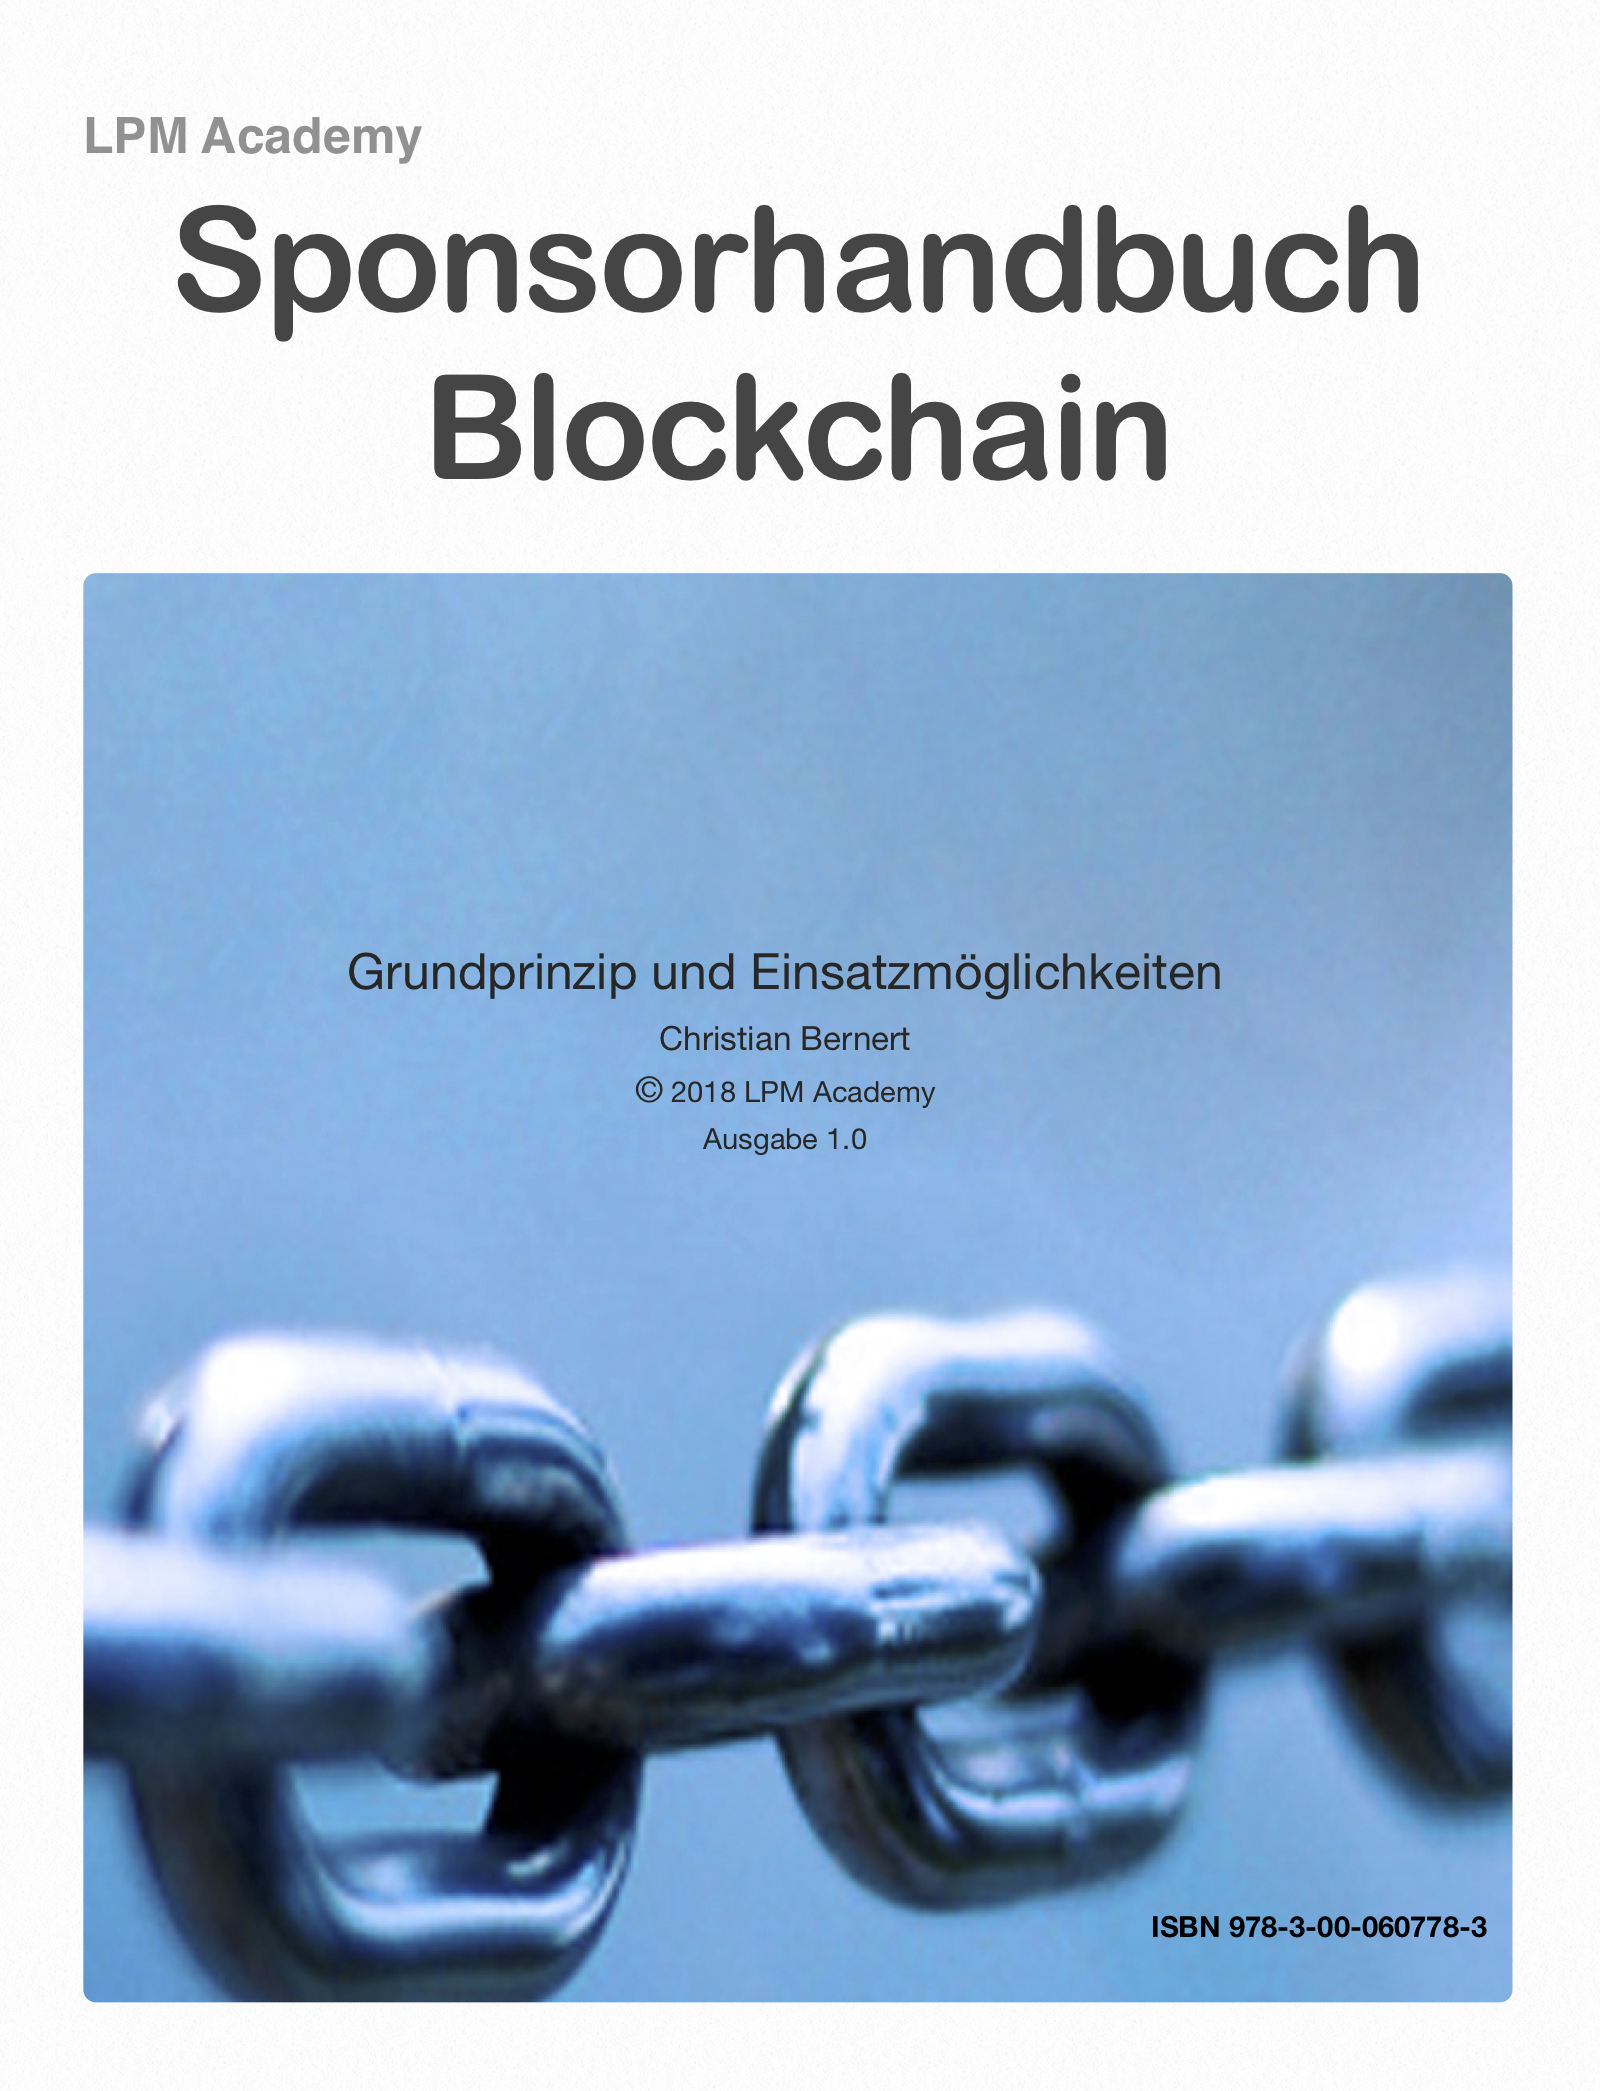 Sponsorhandbuch Blockchain